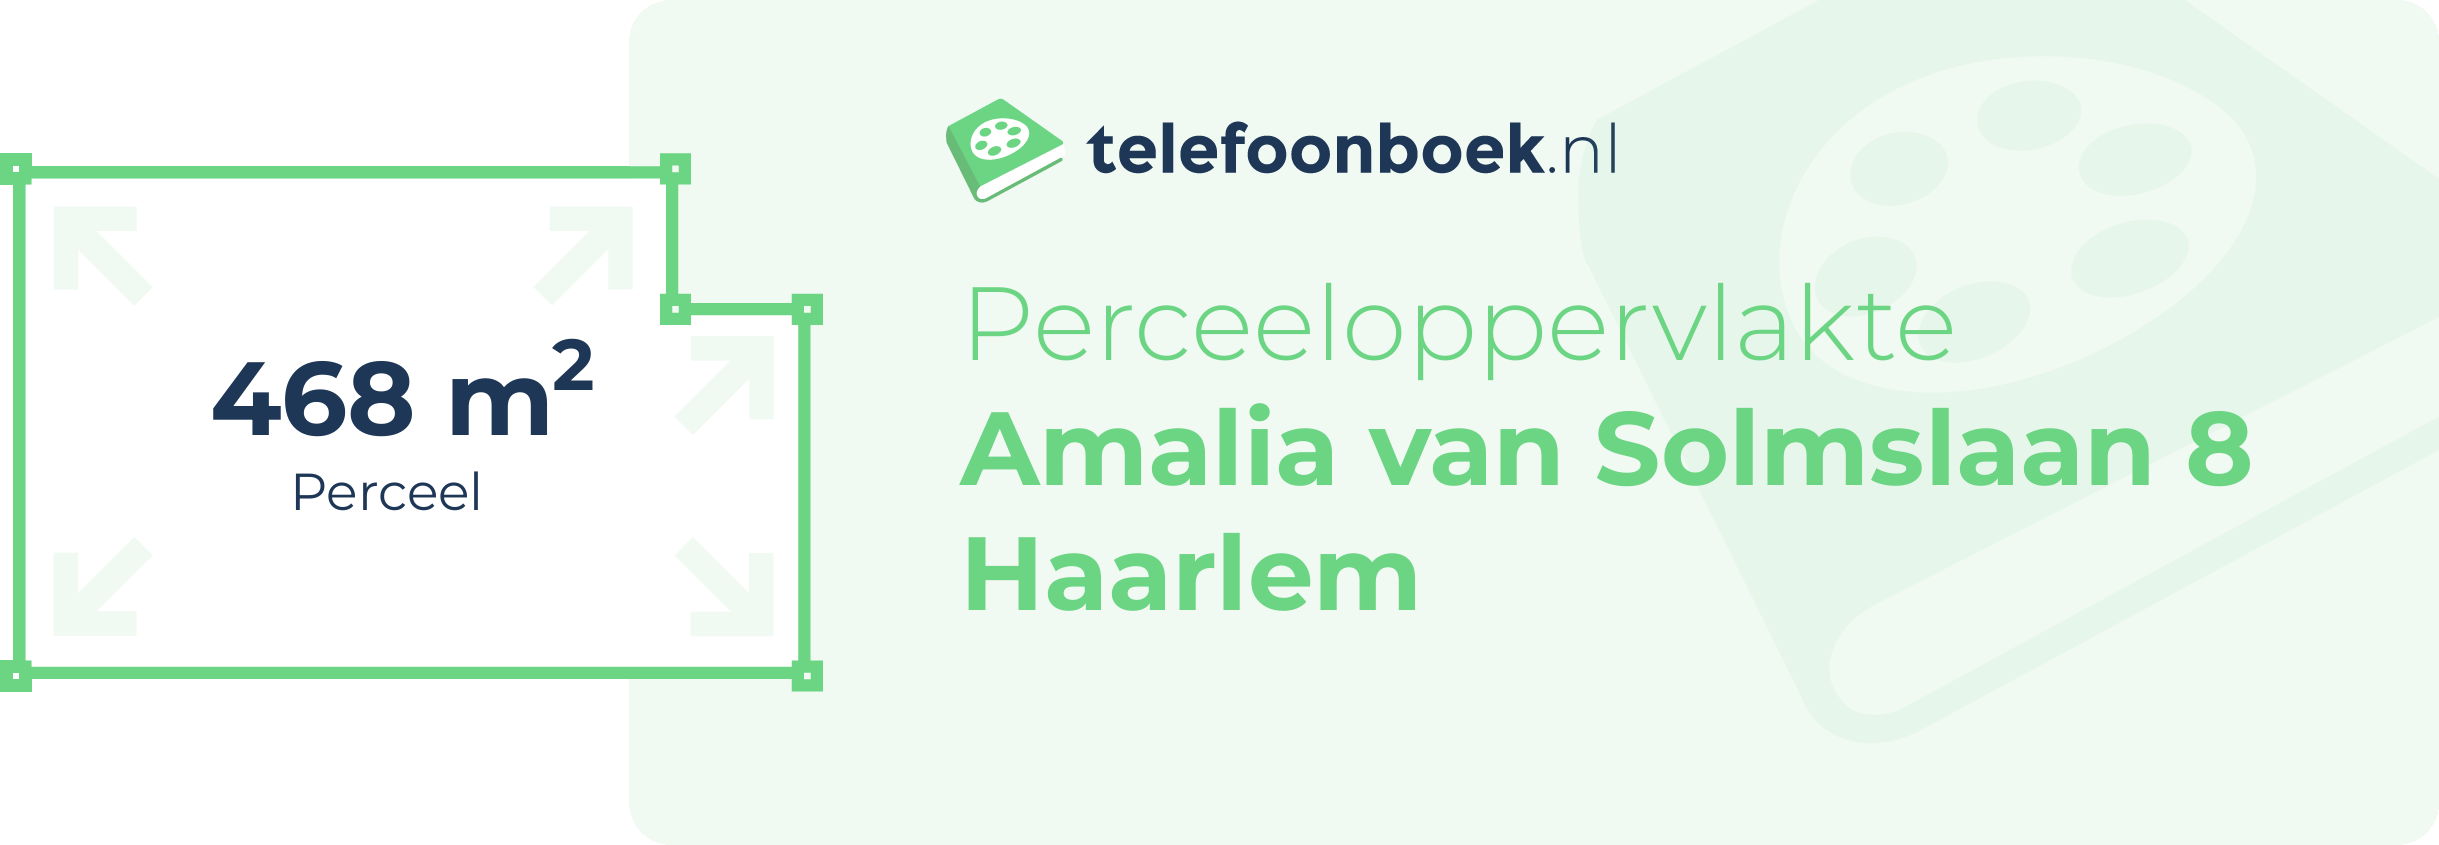 Perceeloppervlakte Amalia Van Solmslaan 8 Haarlem